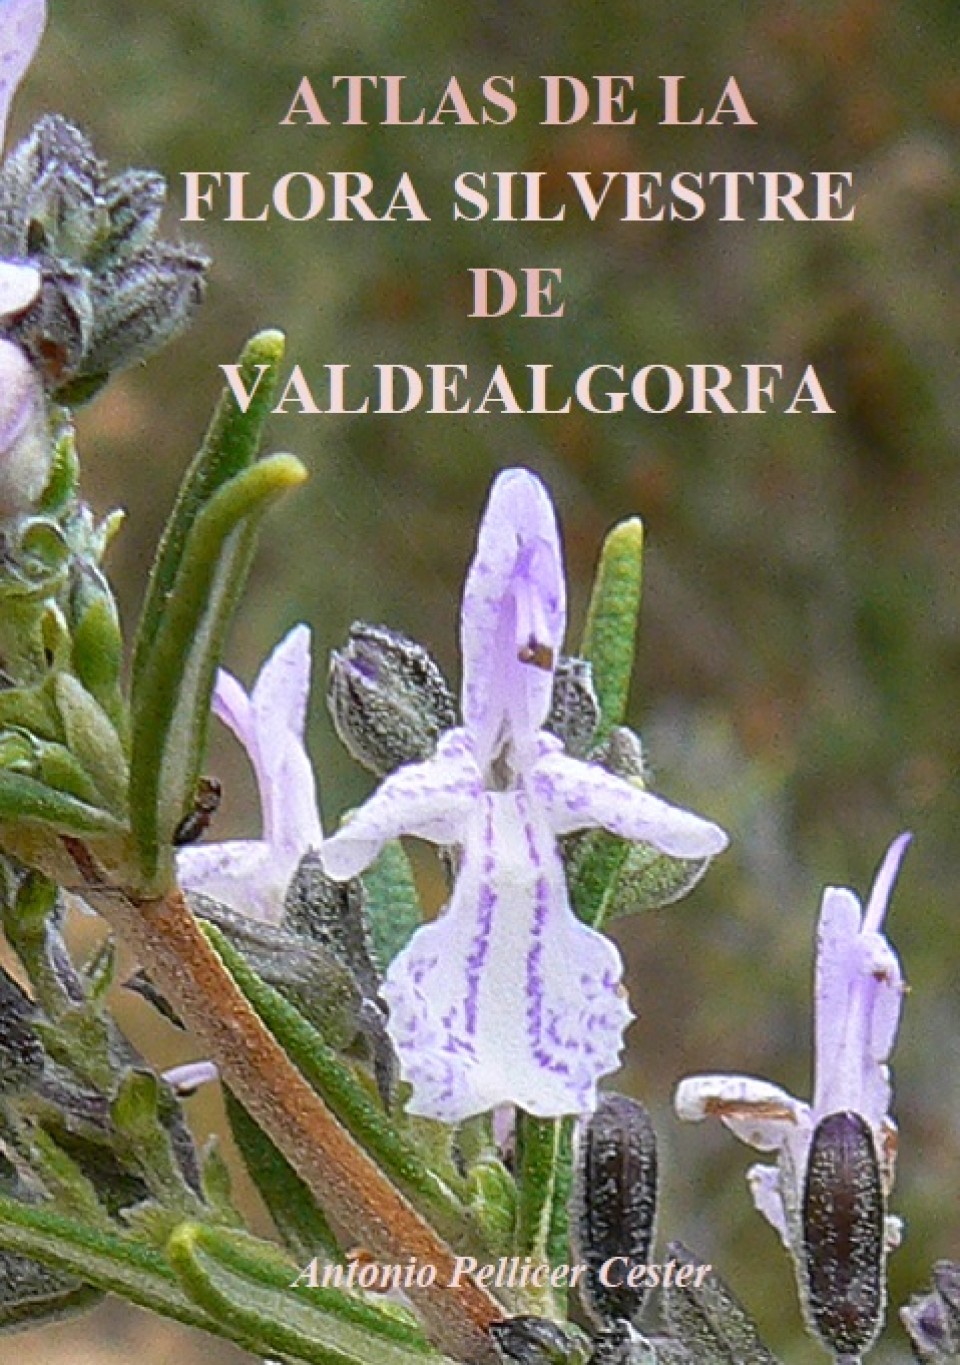 Imagen portada-atlas-flora.jpg